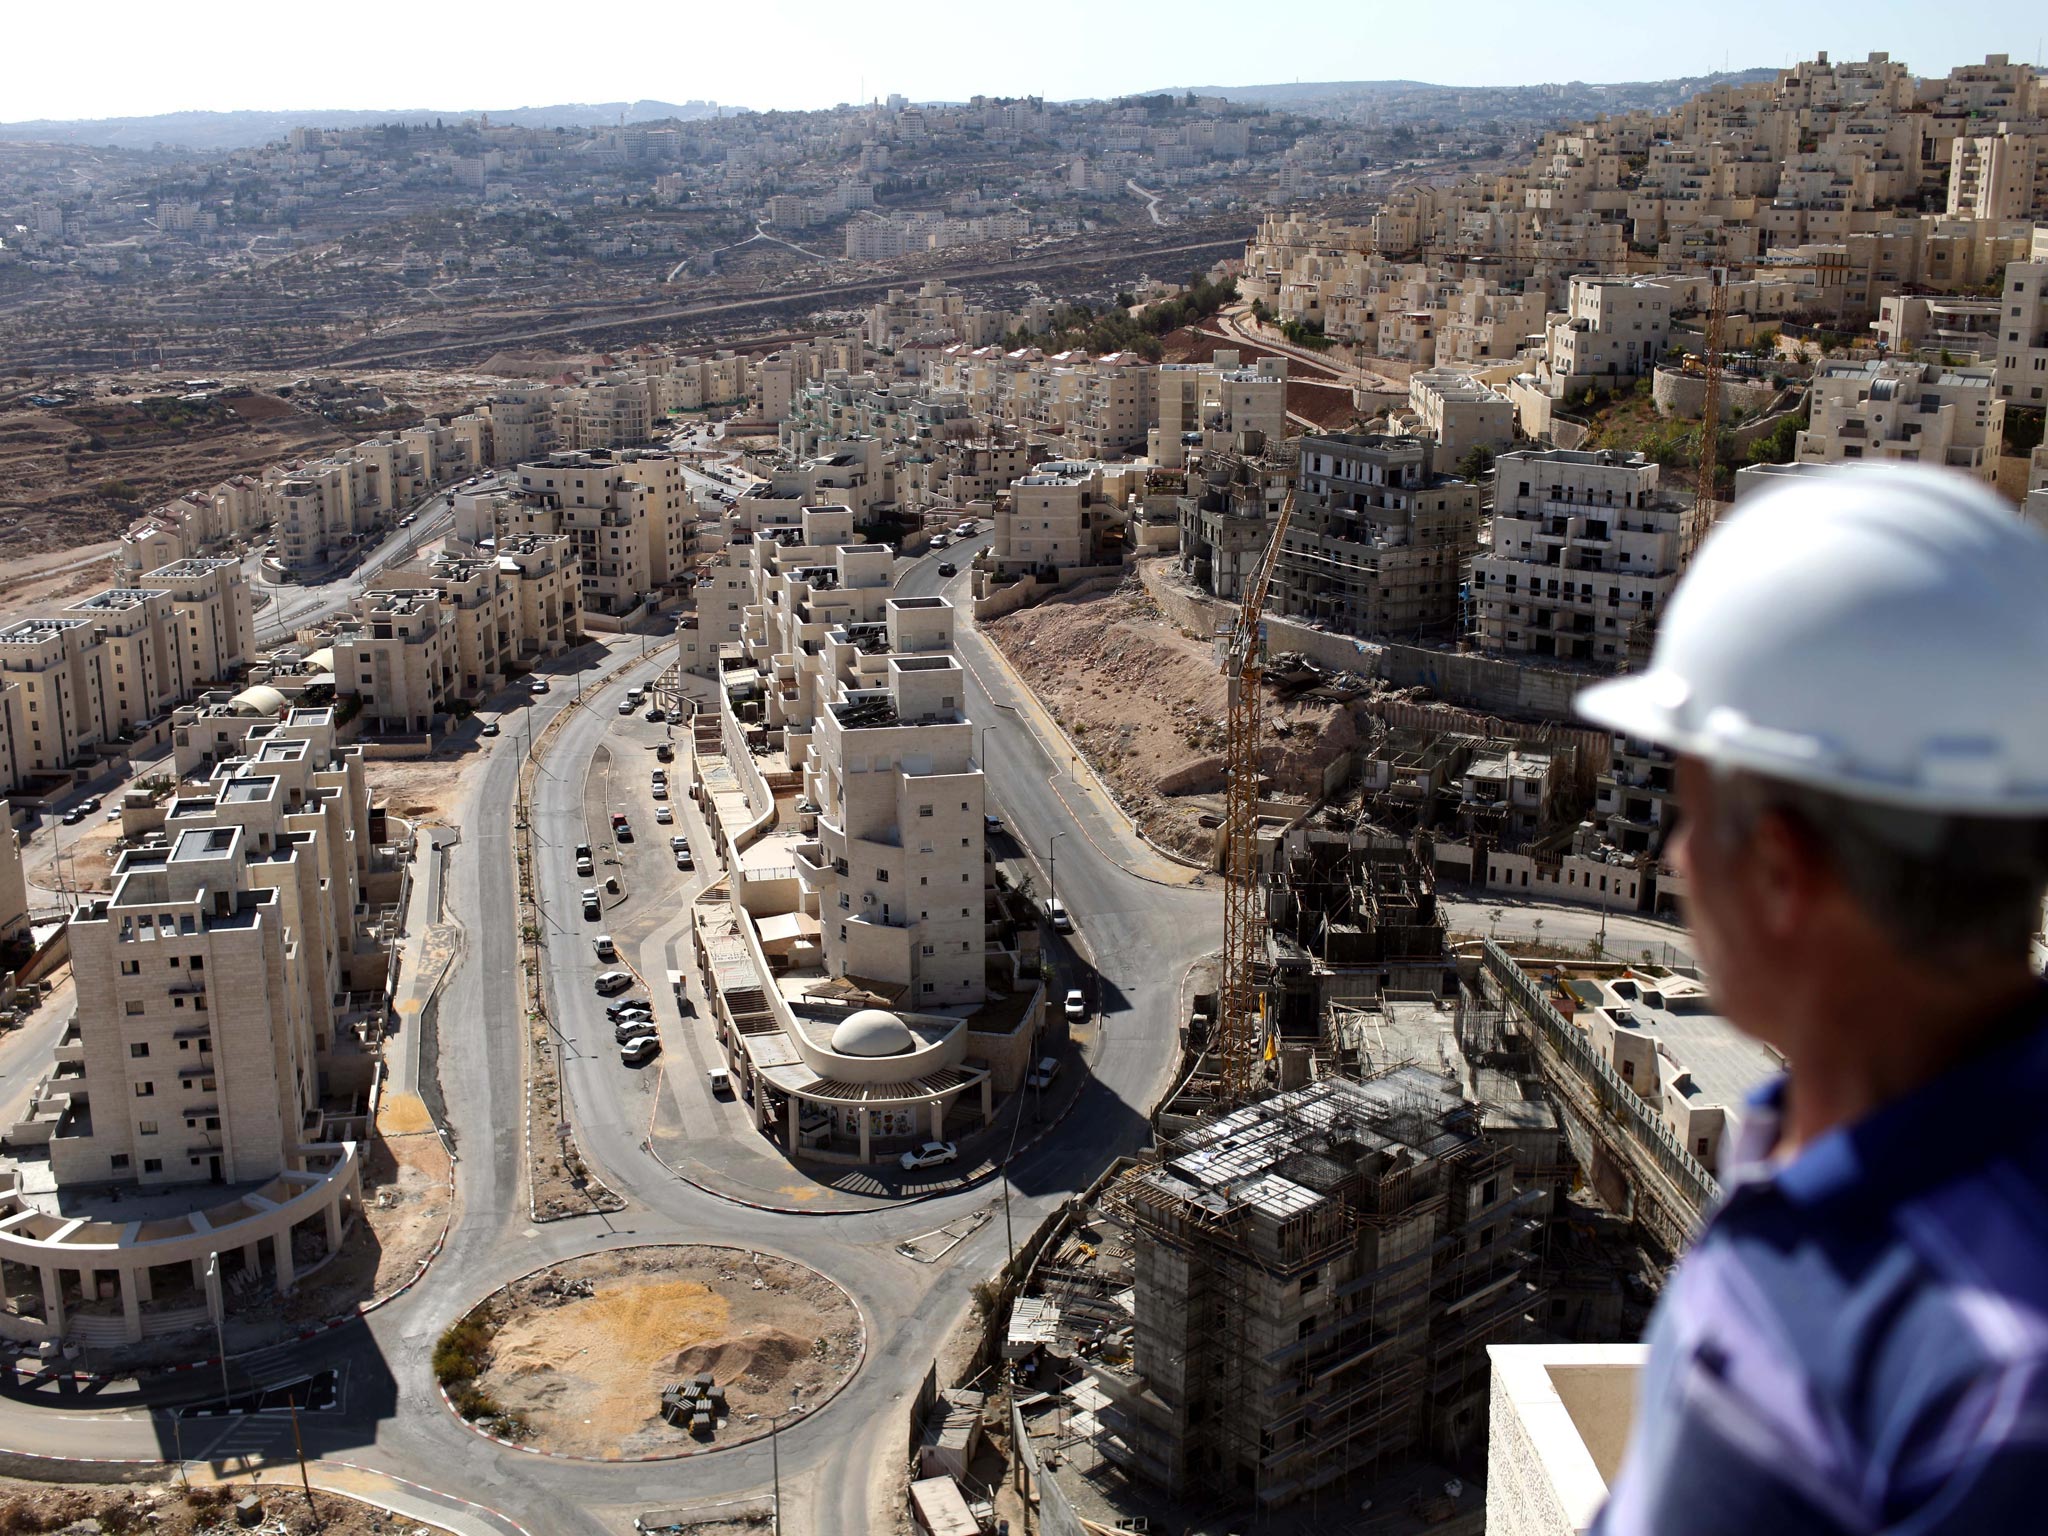 Jerusalem's municipal planning committee authorised 243 new housing units in Ramot, a municipal spokeswoman said